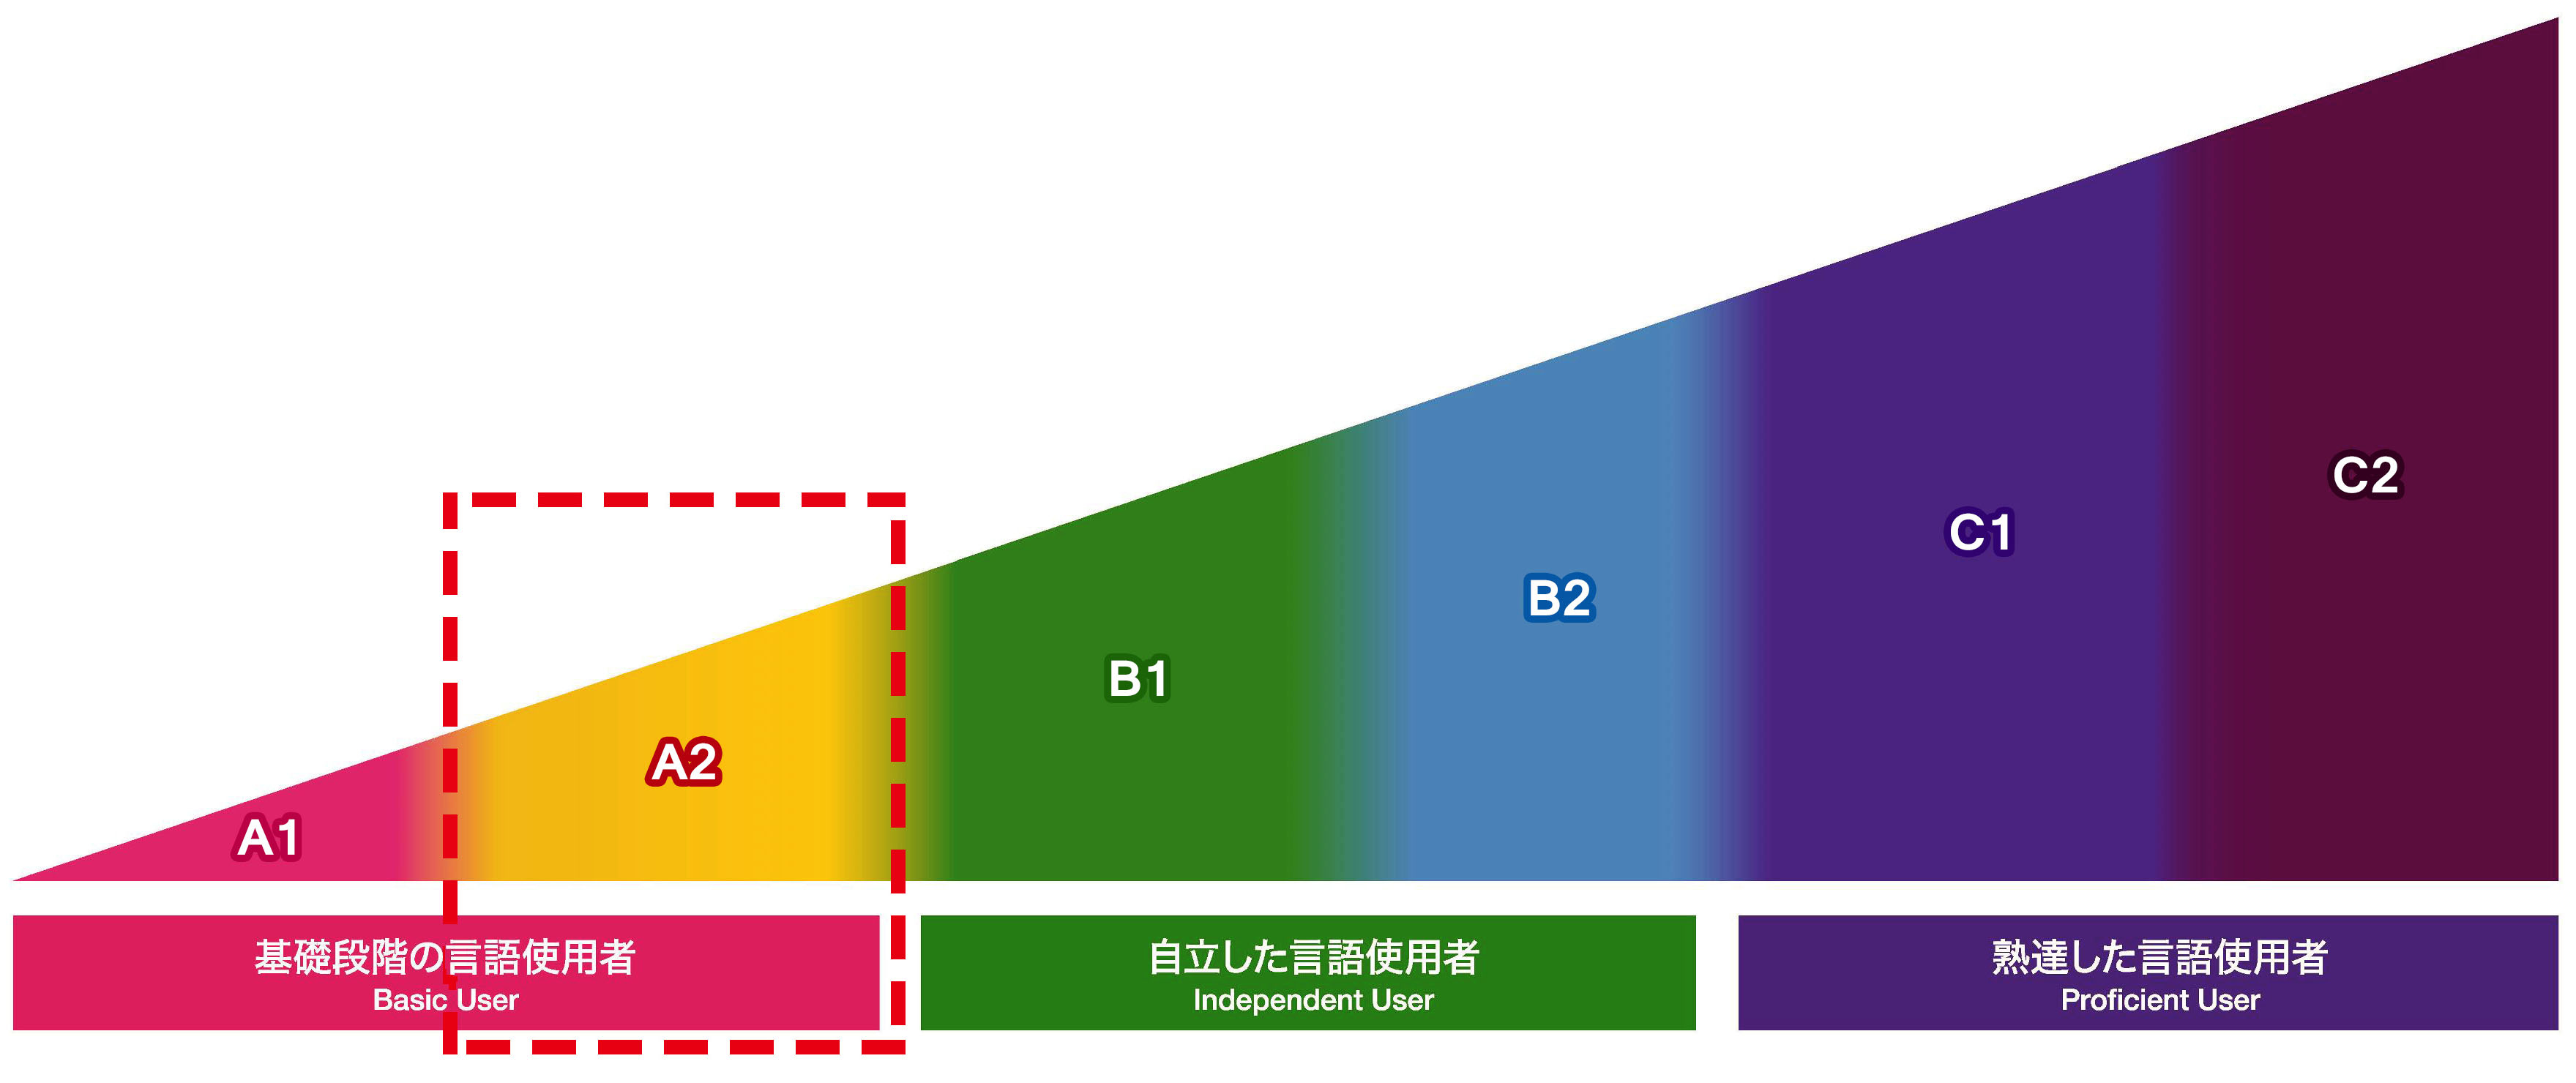 Can-doのレベルを左からA1,A2,B1,B2,C1,C2と6つに区分けされた、右肩上がりの三角形と、その下に、A1,A2が基礎段階の言語使用者、B1,B2が自立した言語使用者、C1,C2が熟達した言語使用者、と記載されており、A2の箇所が赤い点線枠で強調されている図。拡大画像へのリンク